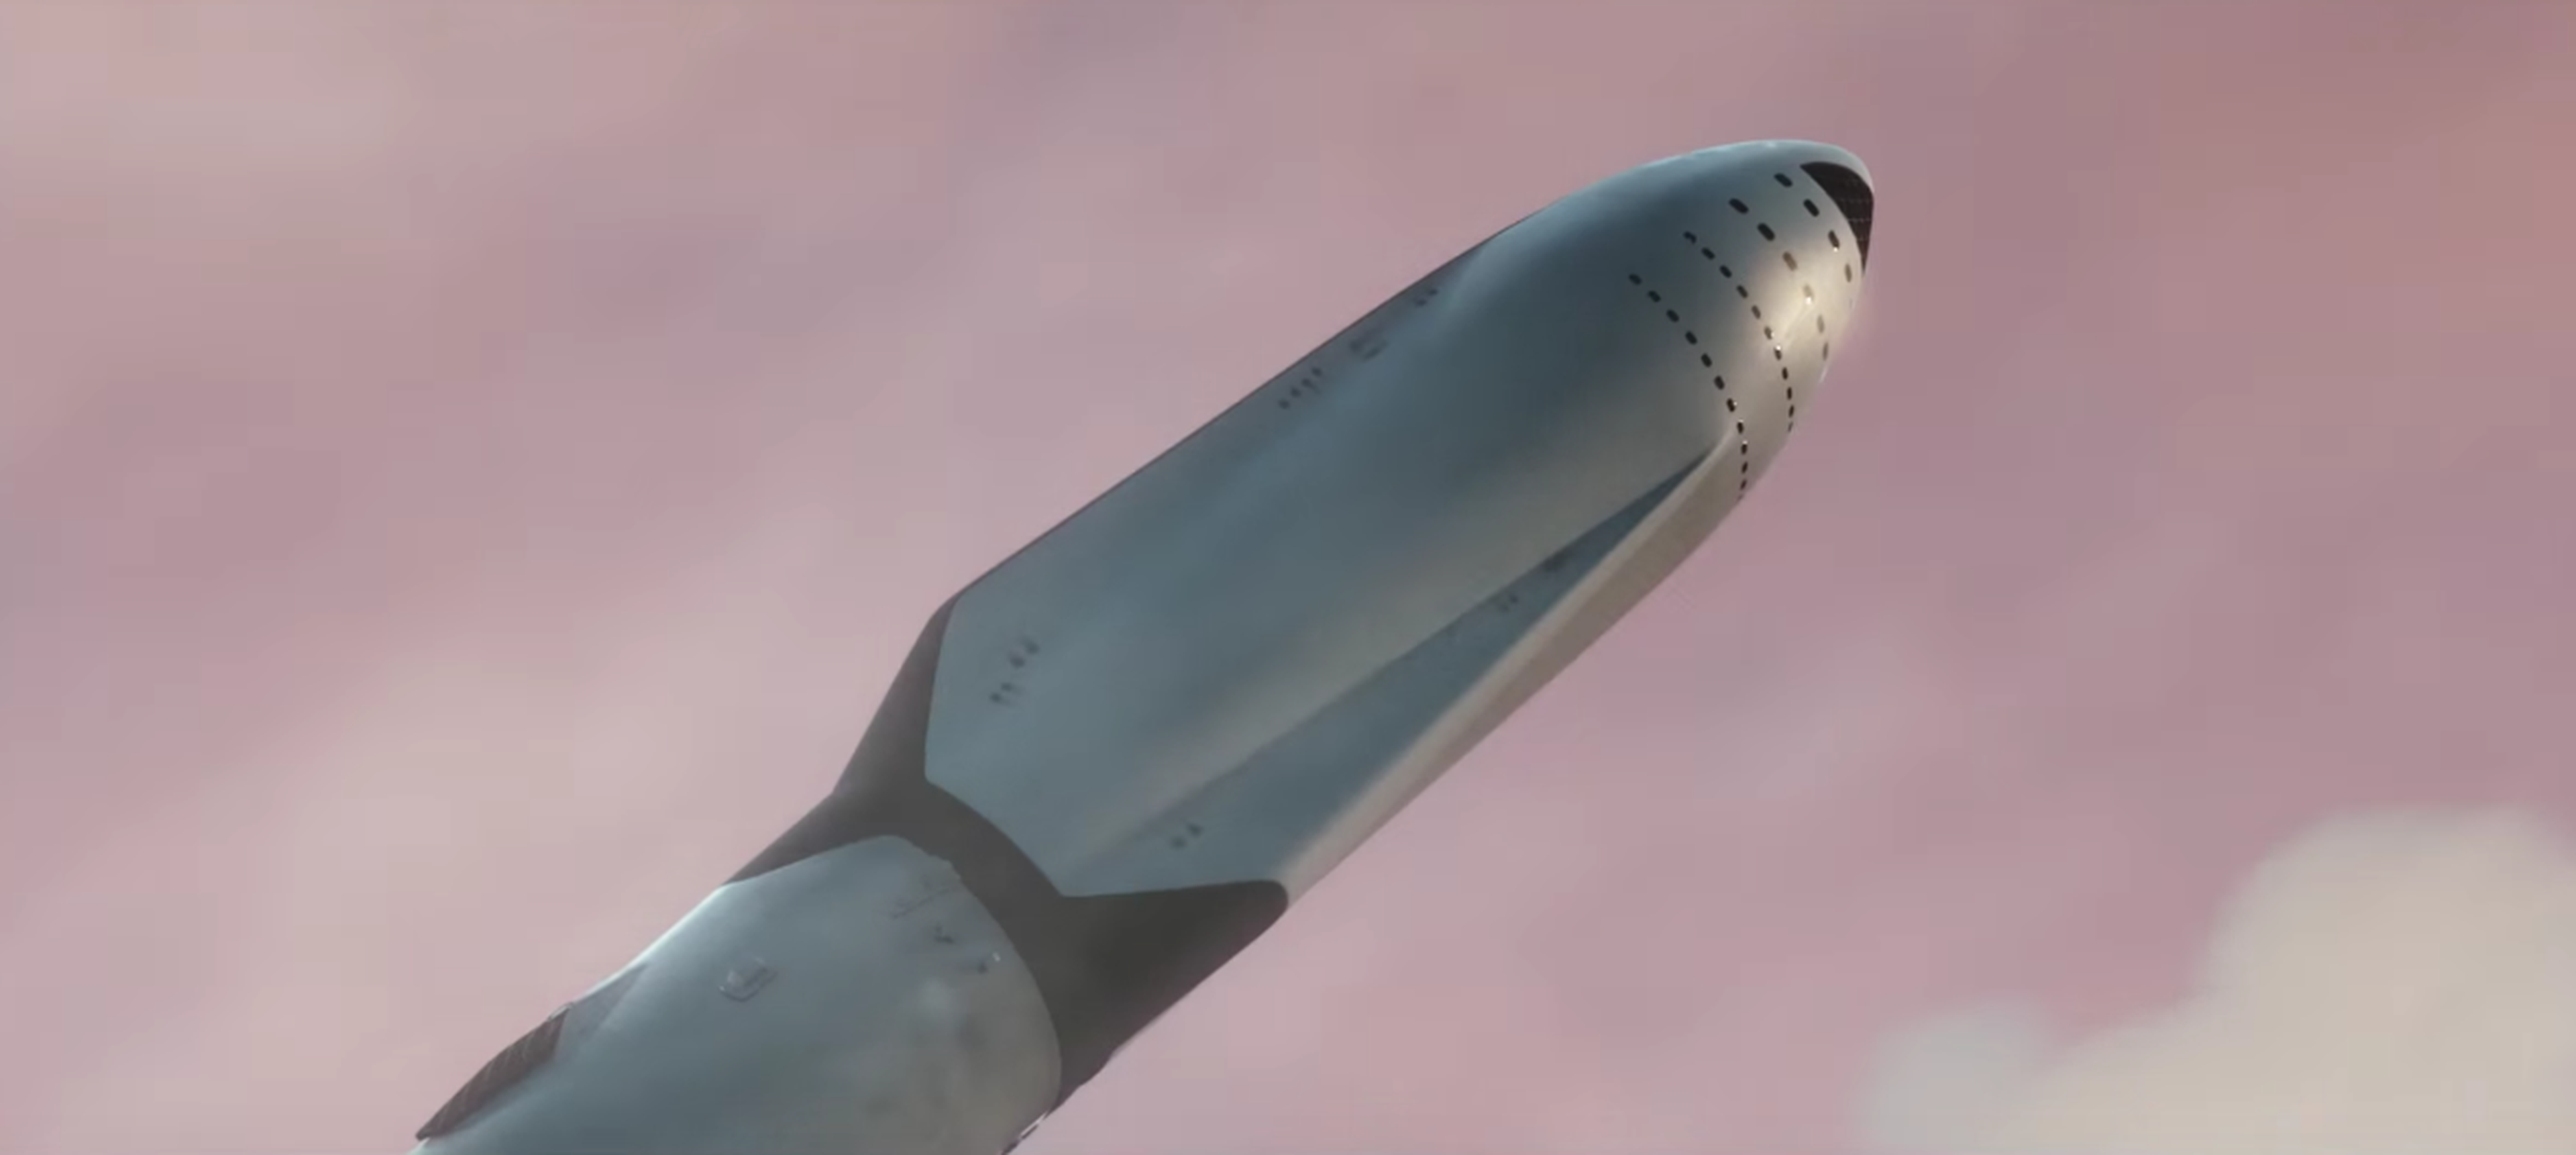 VÍDEO: ¿Viajar a Marte en 2022? ¡Así lo planea SpaceX!